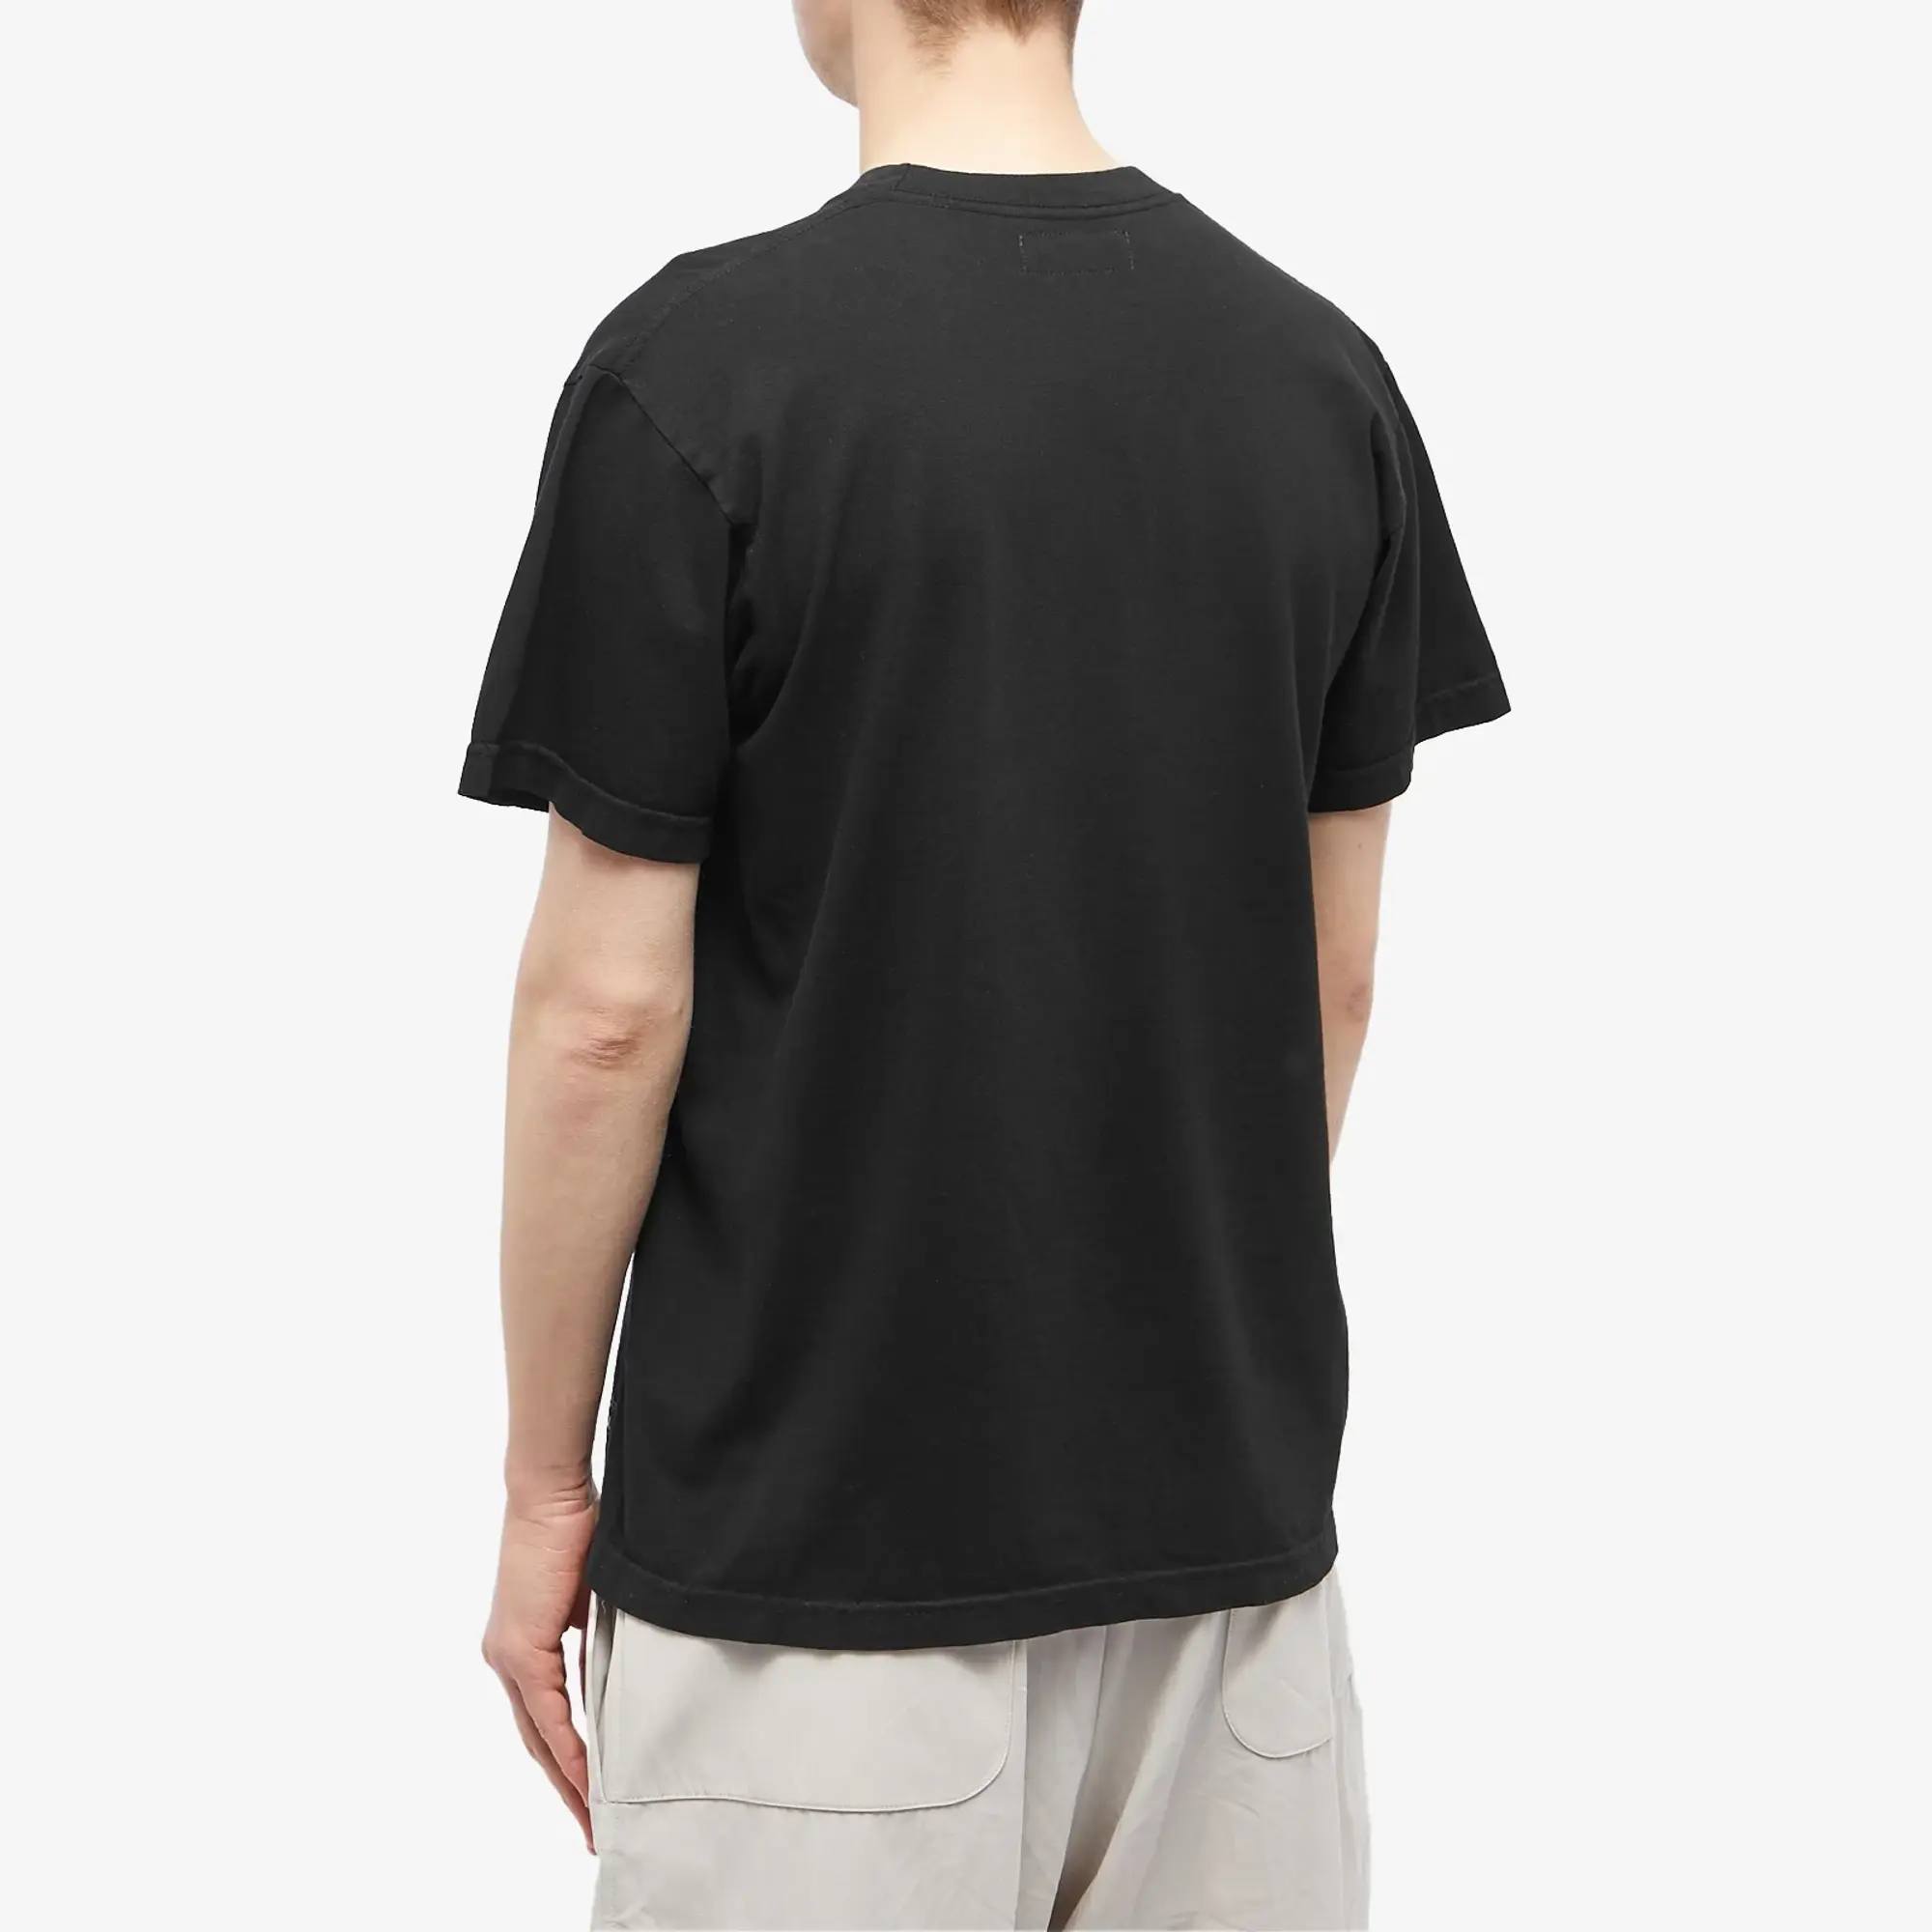 Afield Out Men's Elements T-Shirt Black